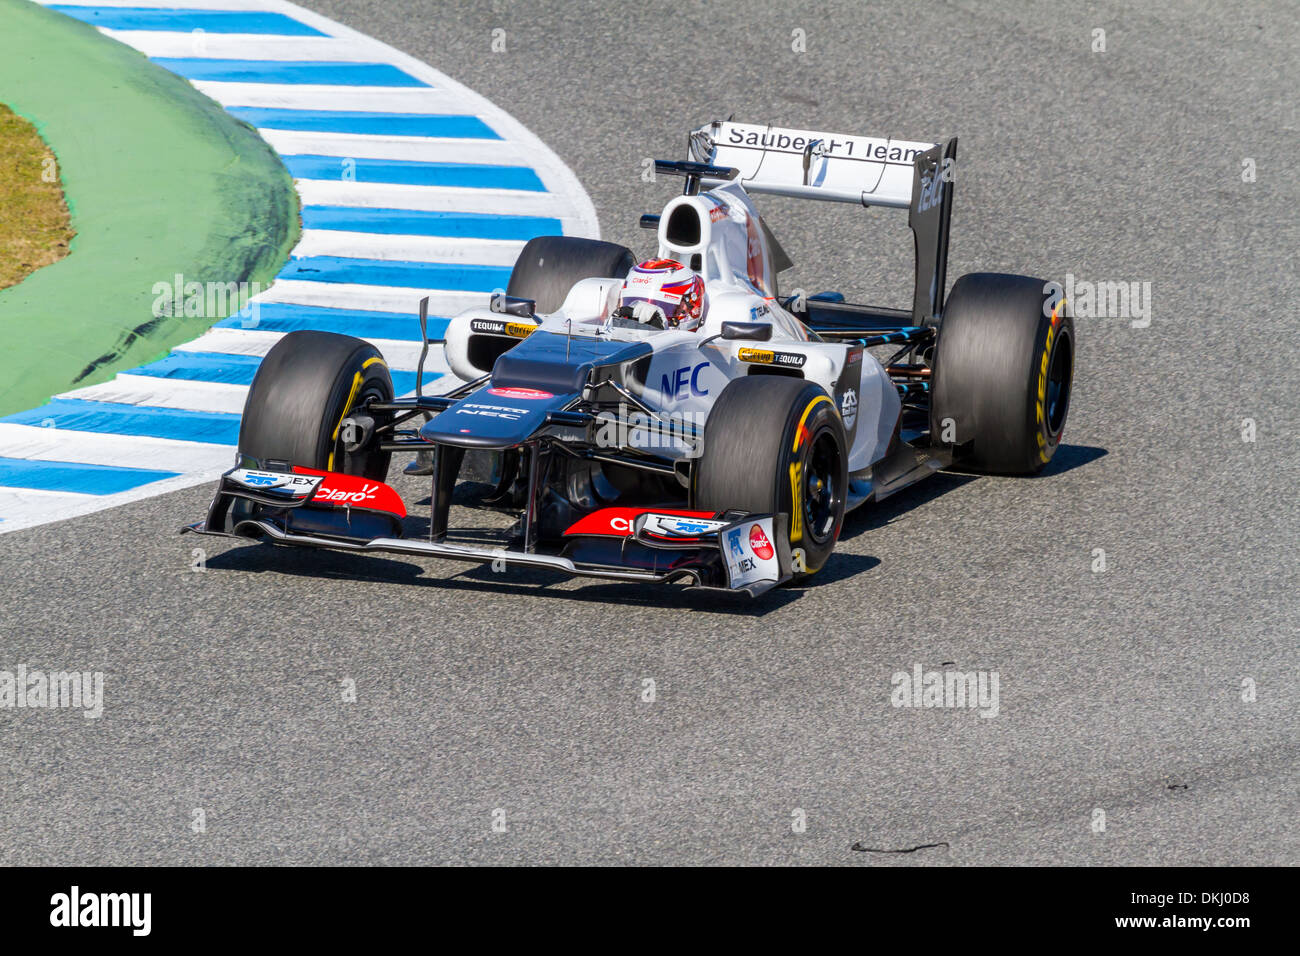 Kamui Kobayashi of Sauber F1 races on training session Stock Photo